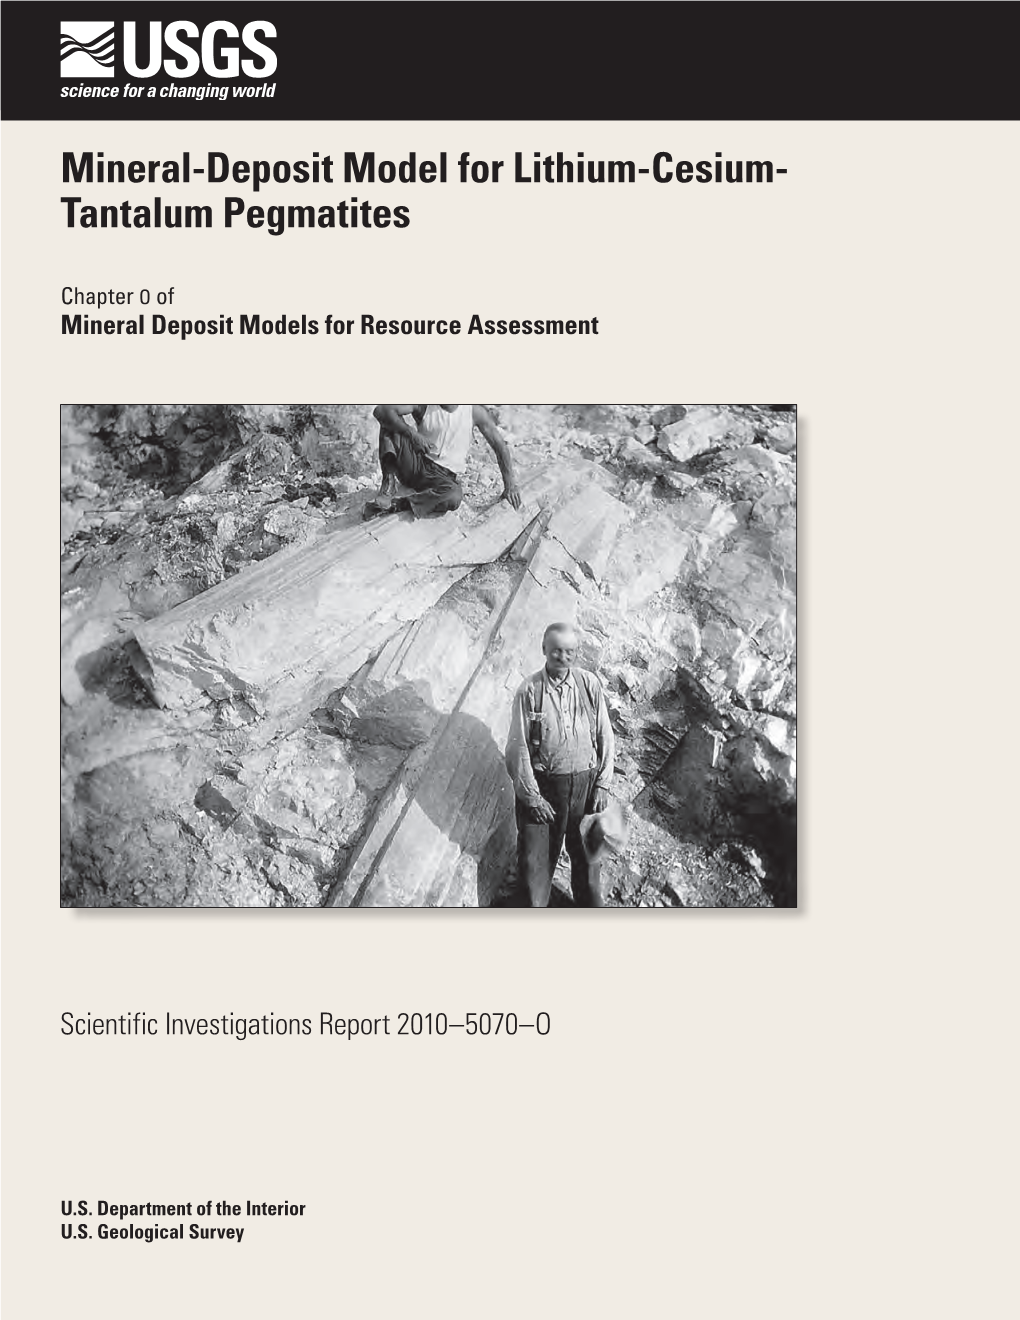 Mineral-Deposit Model for Lithium-Cesium-Tantalum Pegmatites: U.S